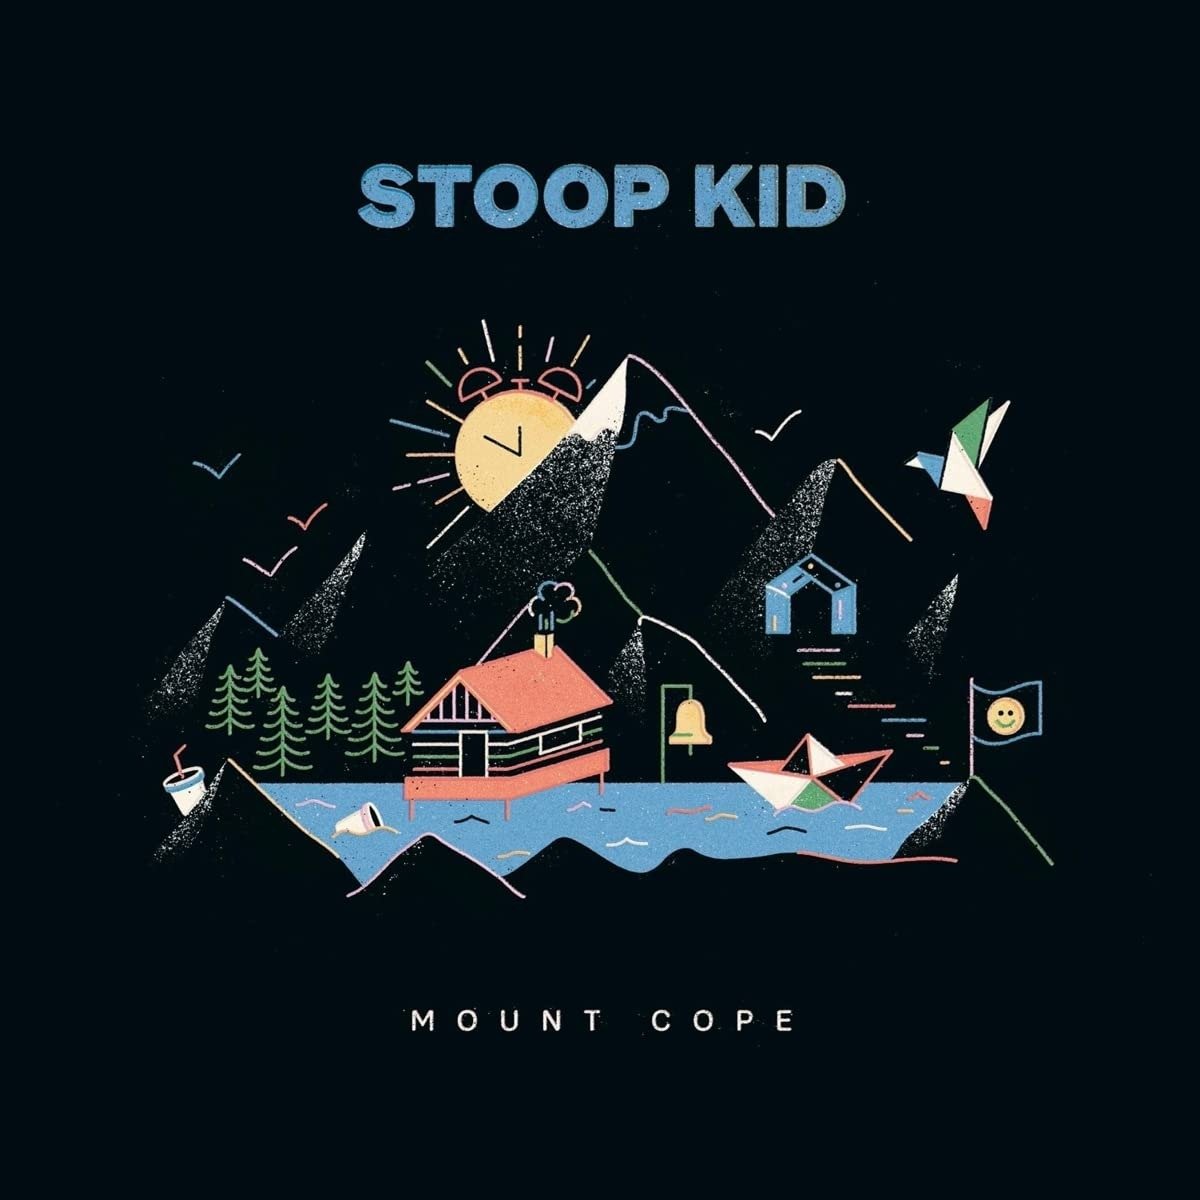 CD Shop - STOOP KID MOUNT COPE